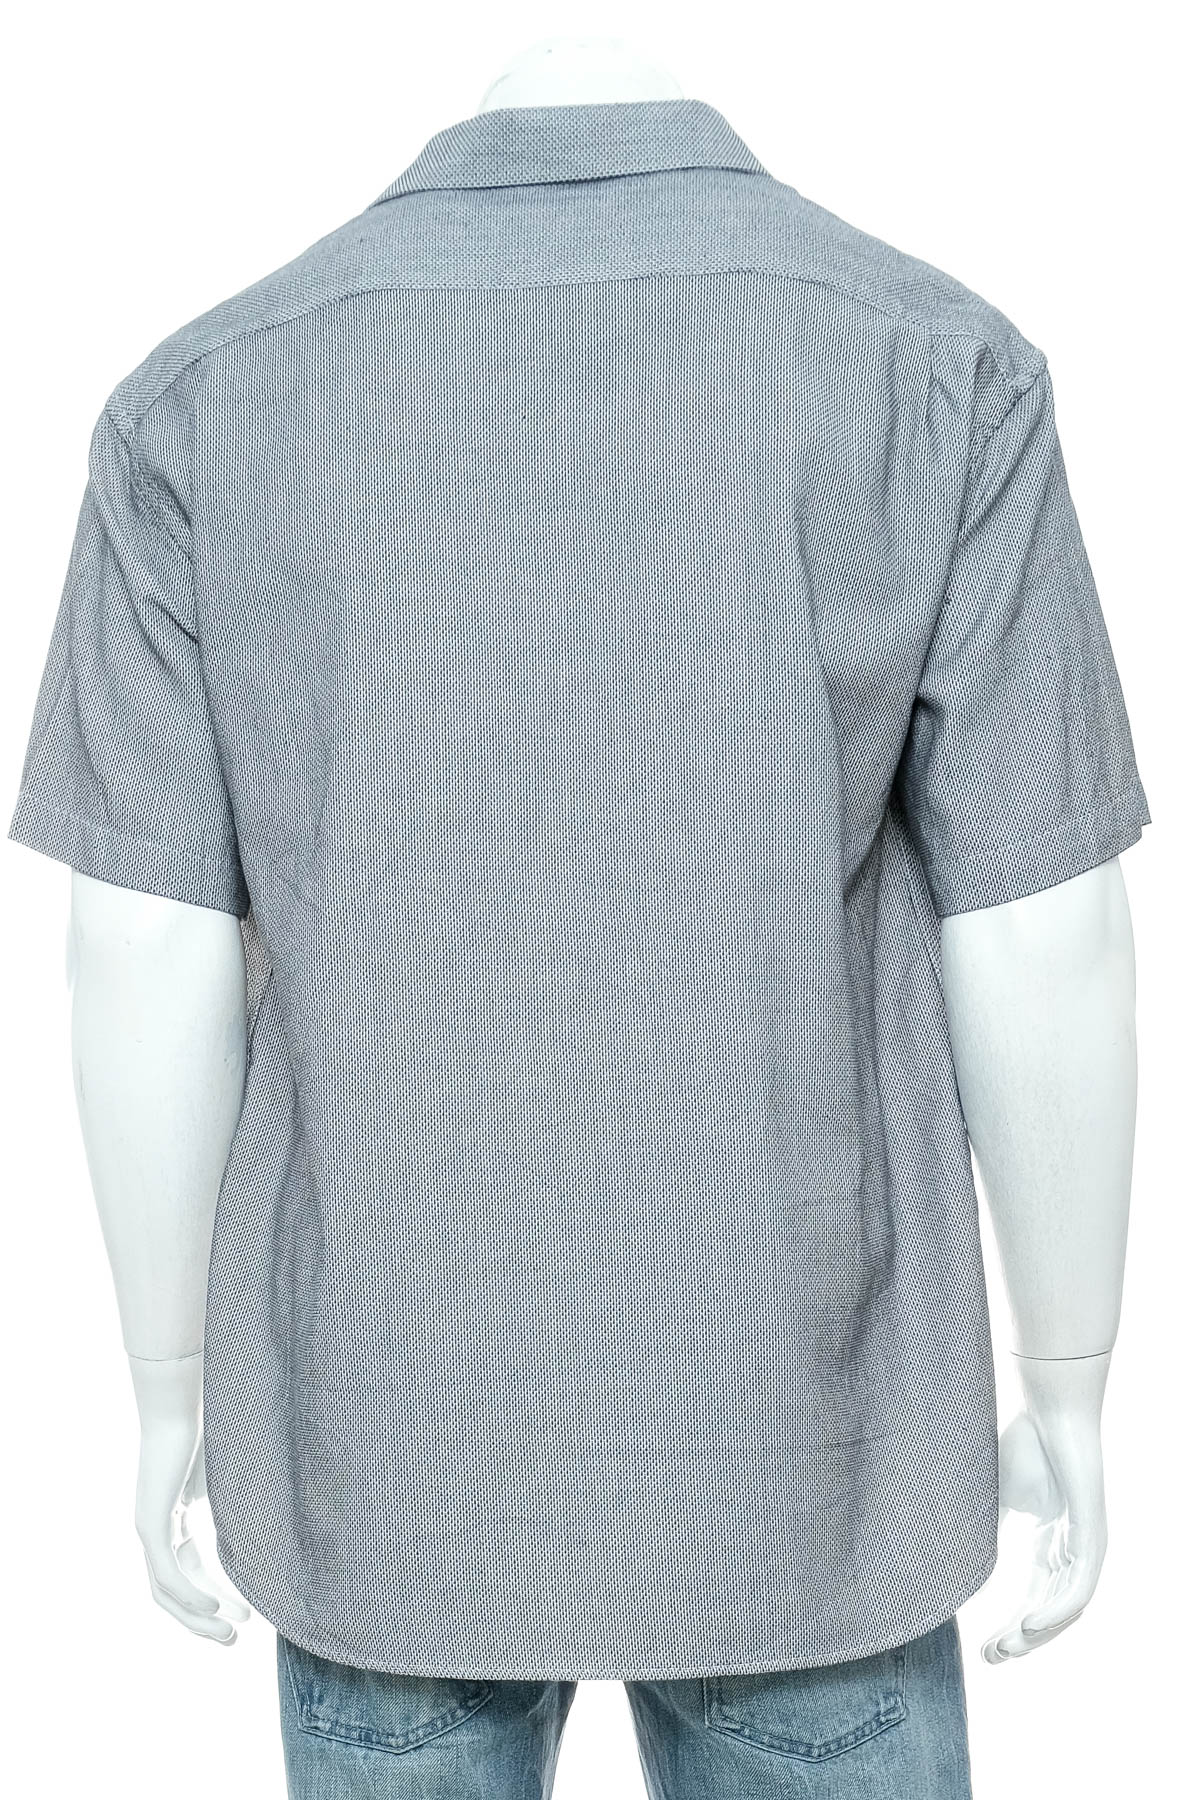 Ανδρικό πουκάμισο - Platinum - 1